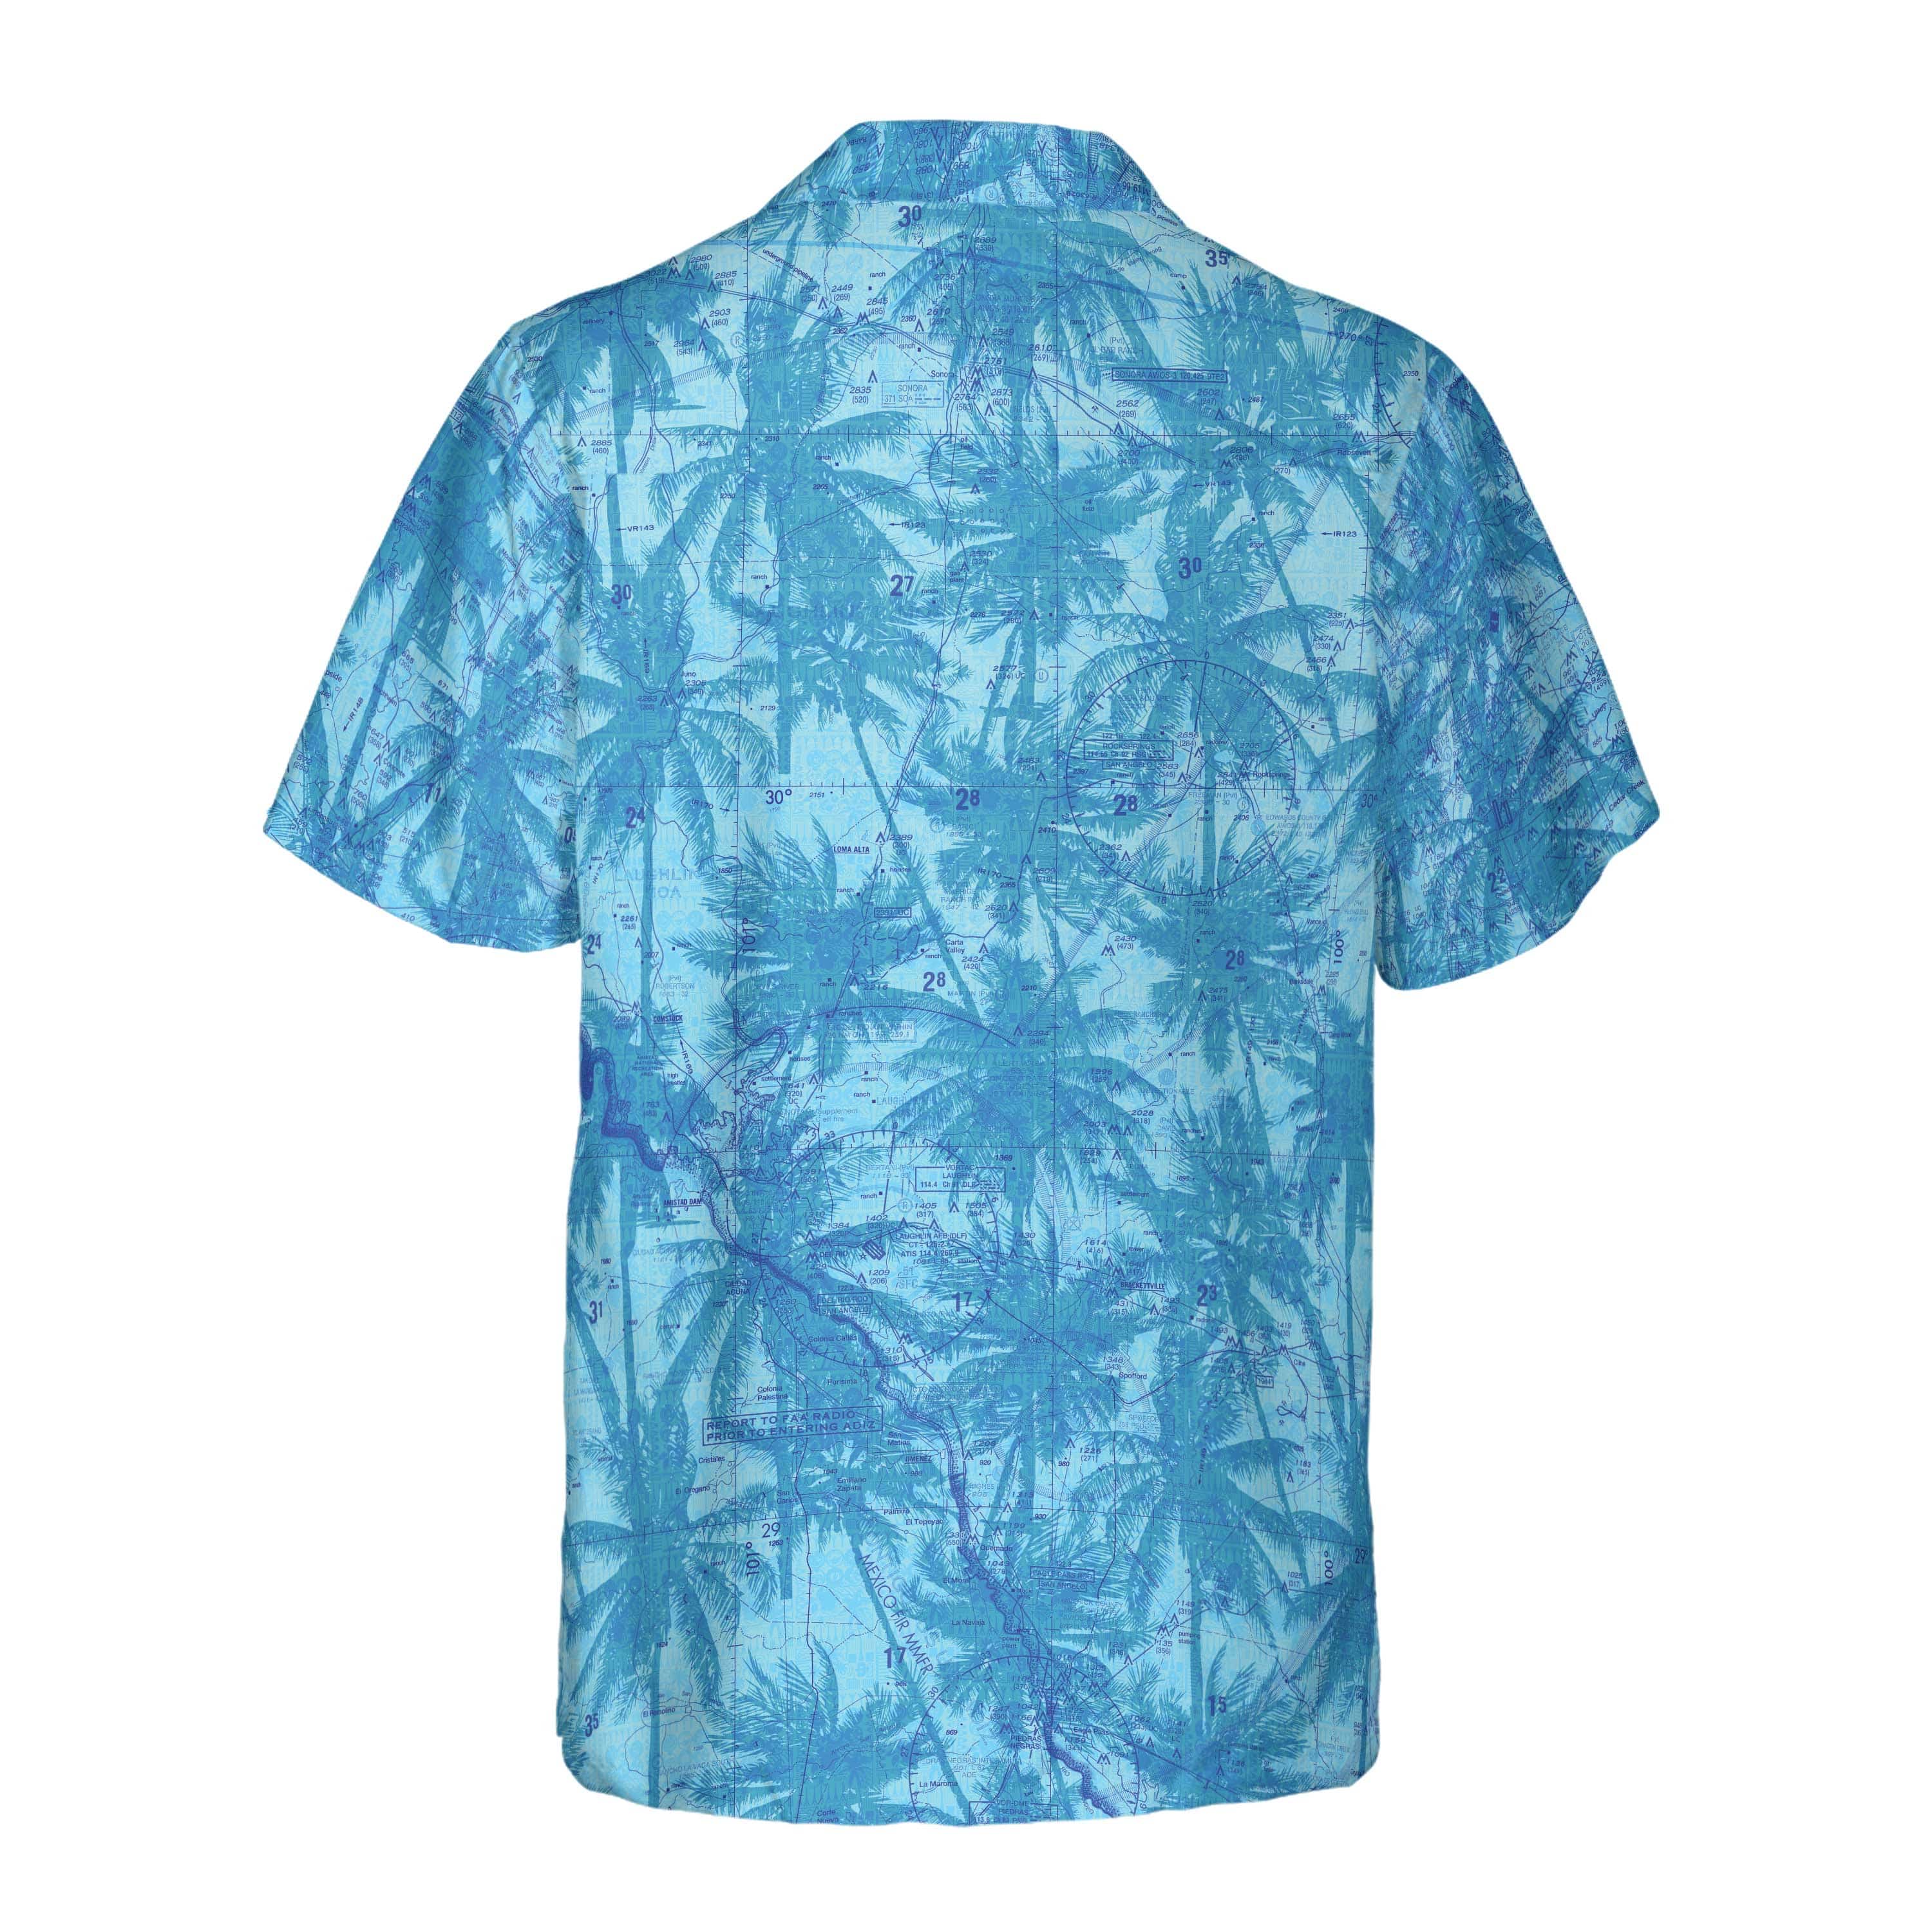 AOP Coconut Button Shirt The Austin Blue Palms Coconut Button Camp Shirt